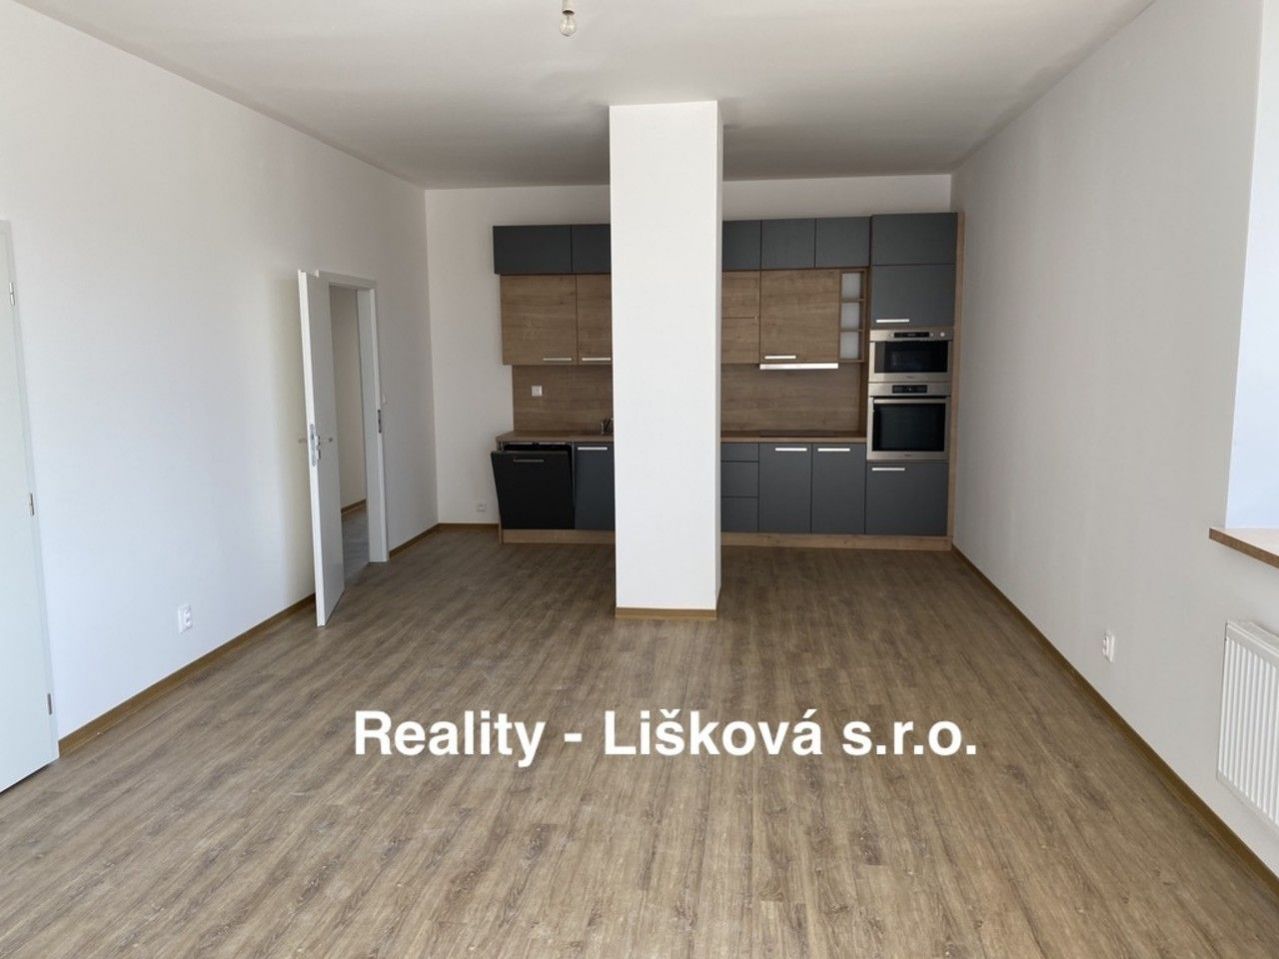 Rezidence - Hradební moderní bydlení v UL byt 3kk, obrázek č. 3